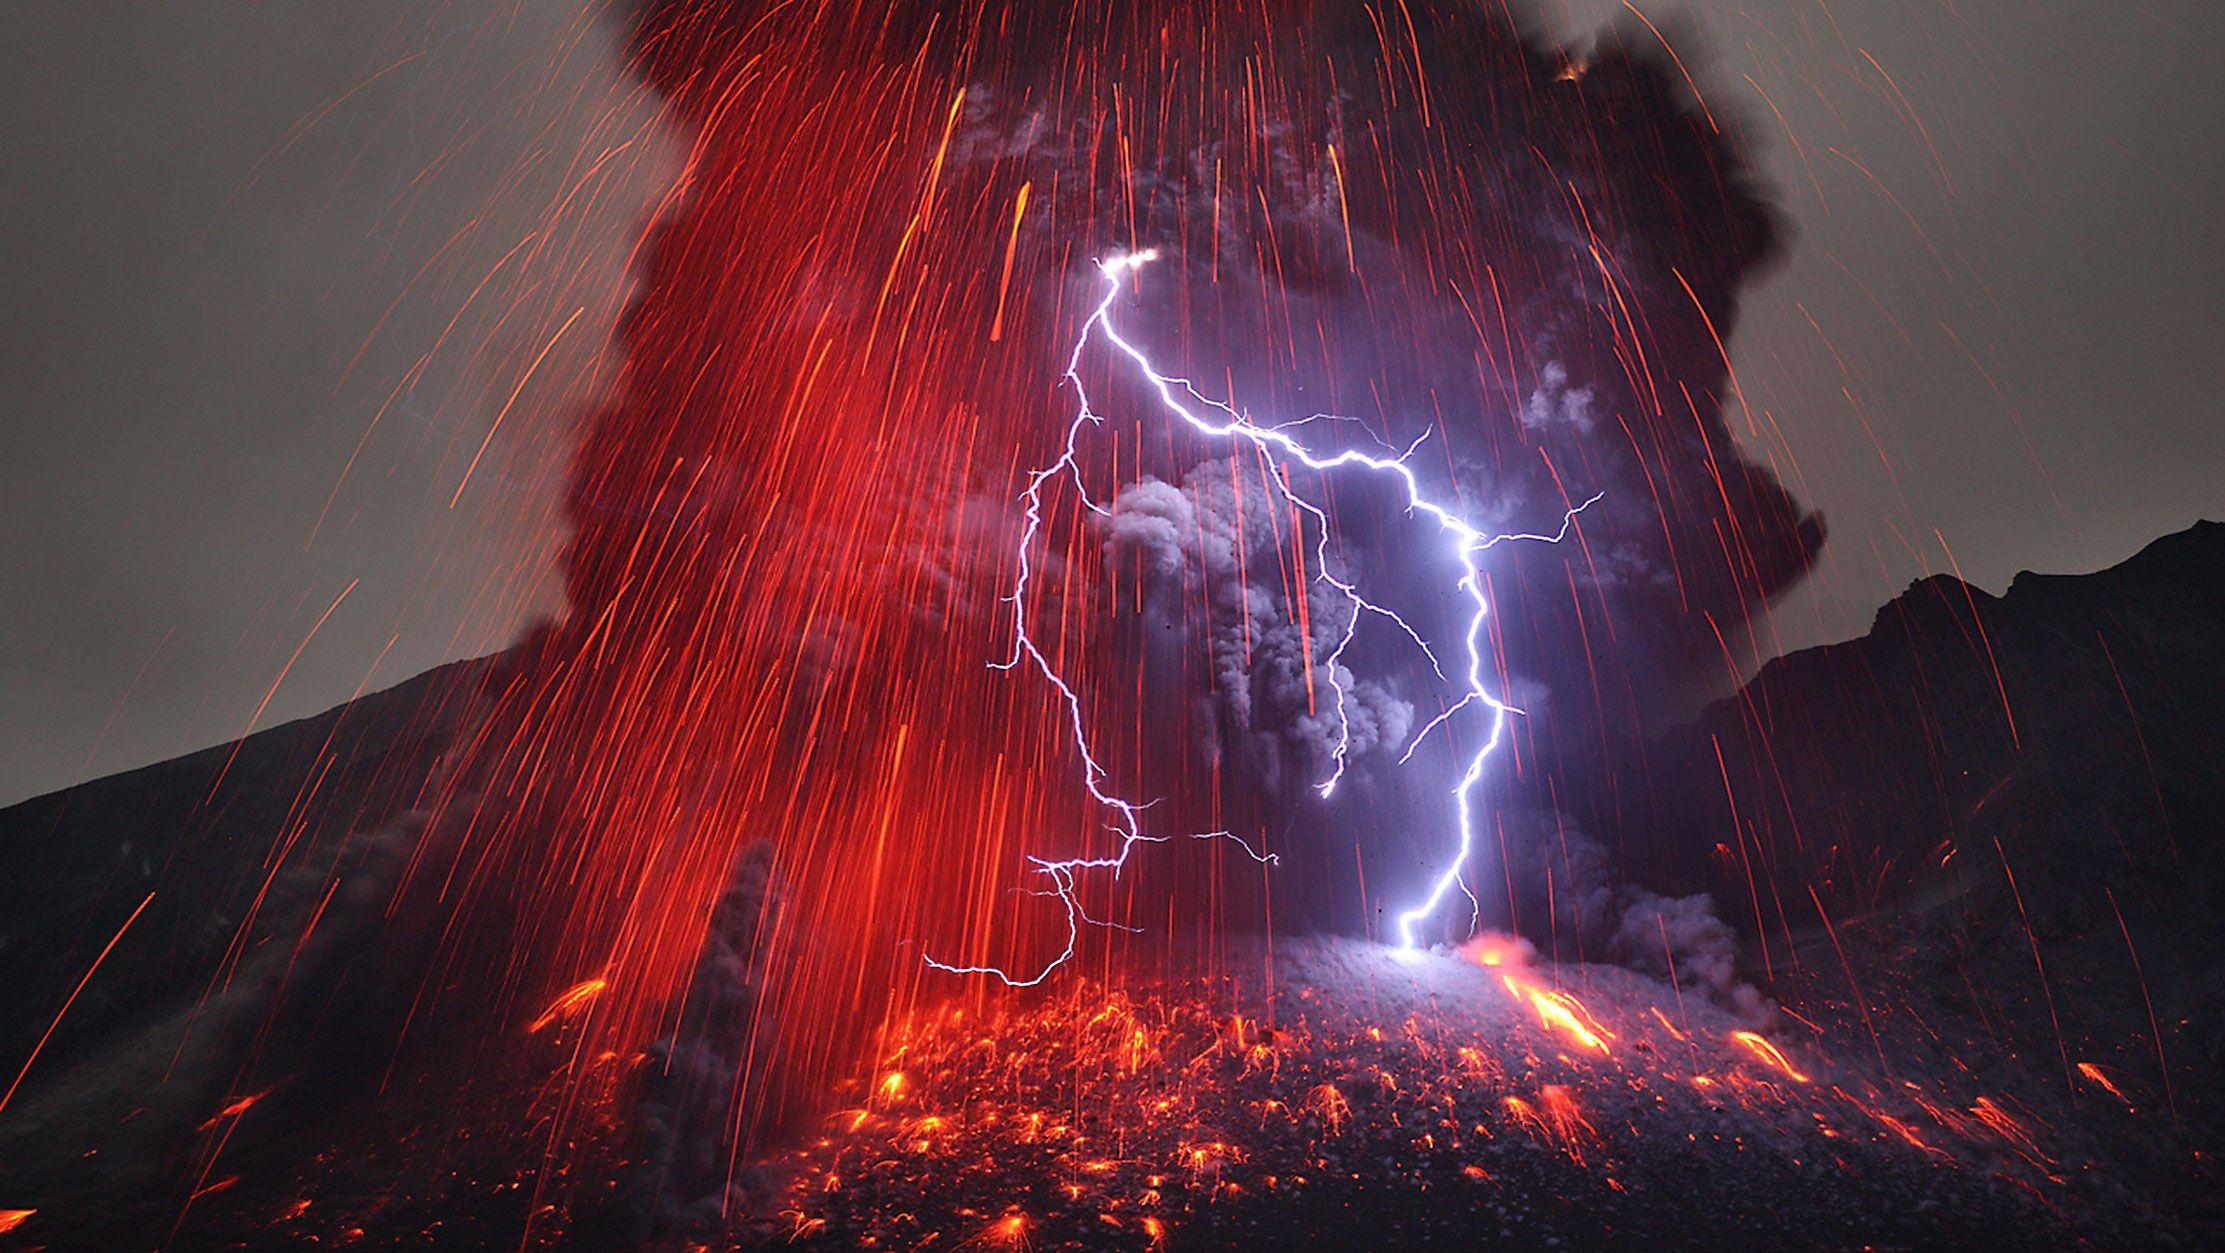 Volkanik patlamalar sırasında neden yıldırımlar oluşur?